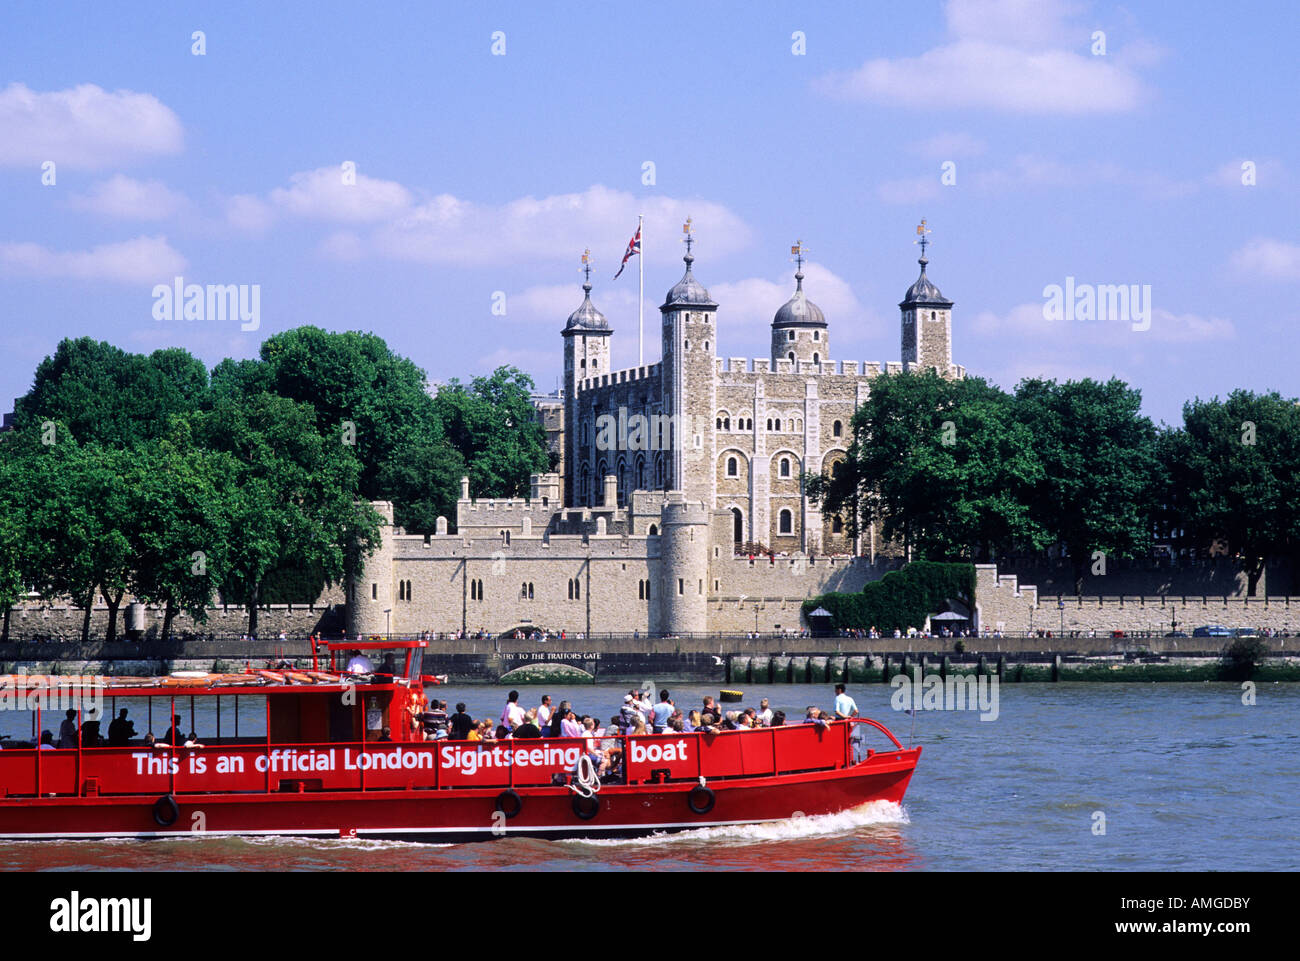 Turm von London Sightseeing Boot Fluss Themse Passagier Boote englische Flüsse Burgen der weiße Turm Stockfoto